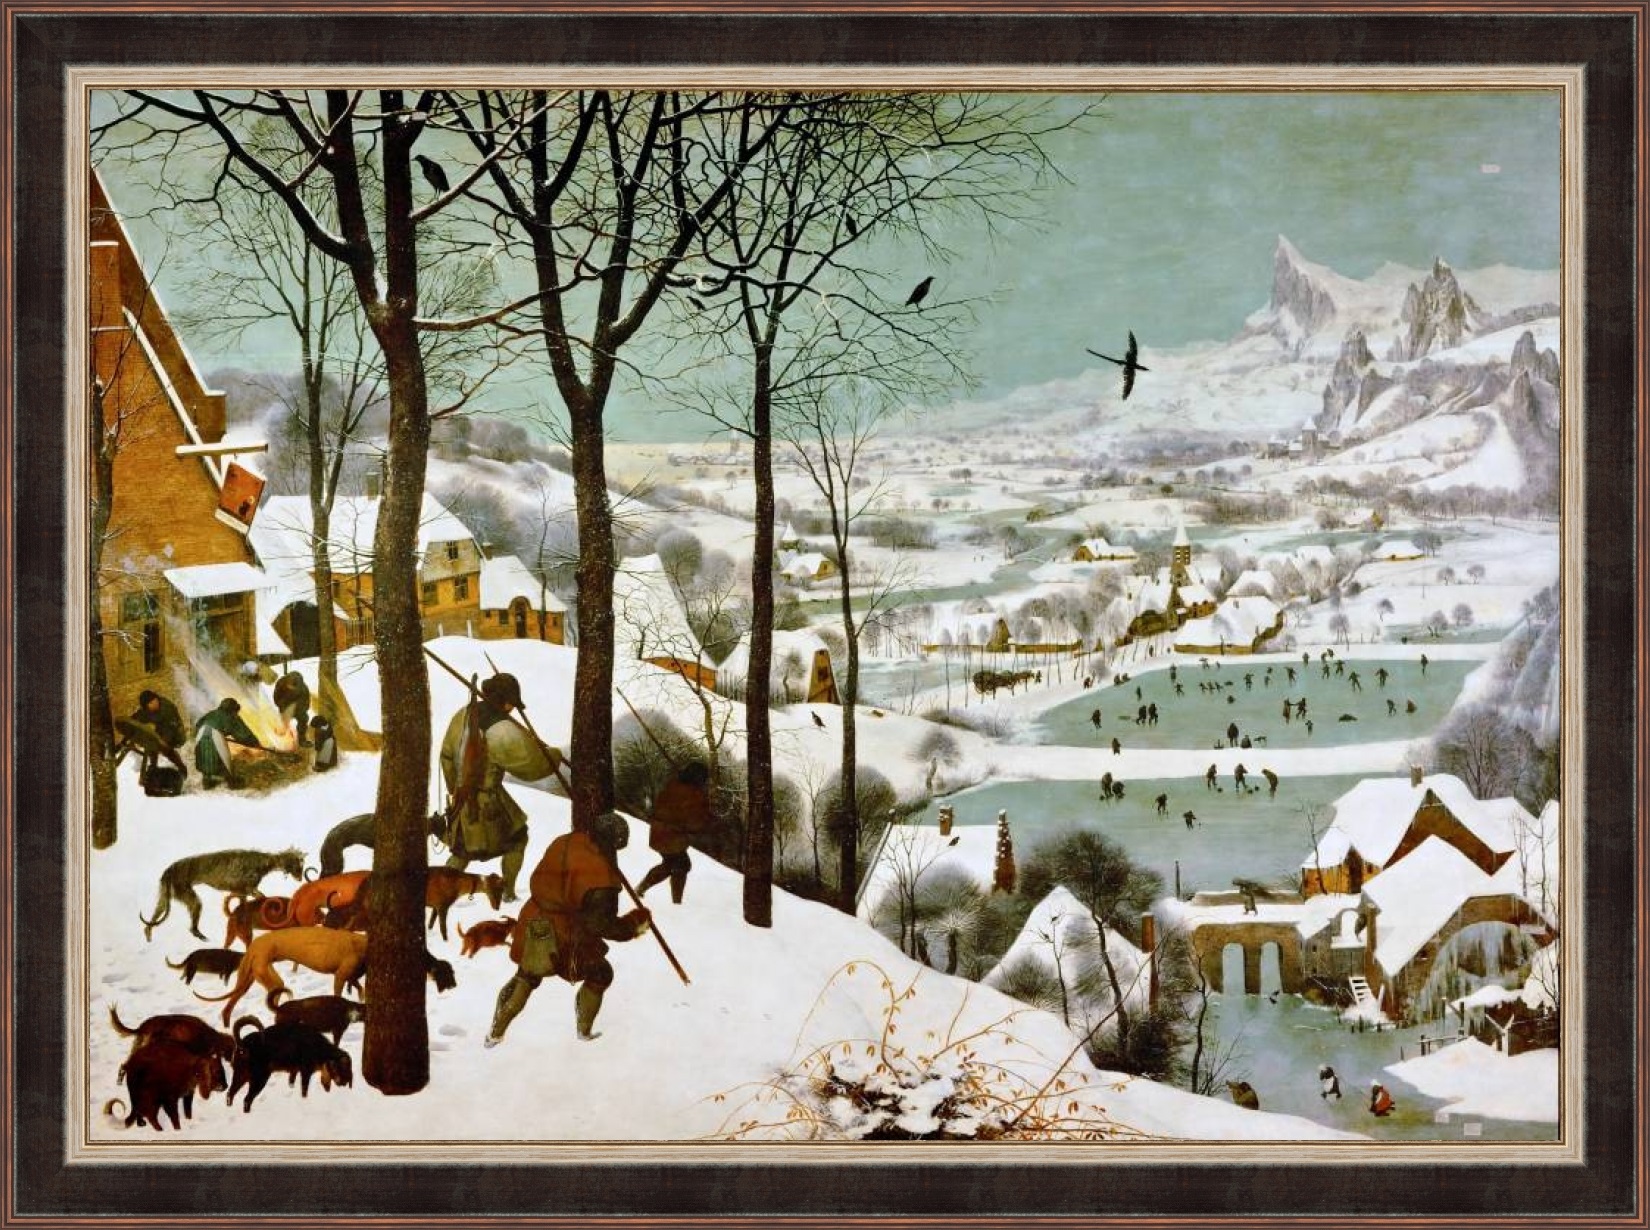 Репродукция картины Питера Брейгеля 'Охотники на снегу' в раме. Вариант 3.